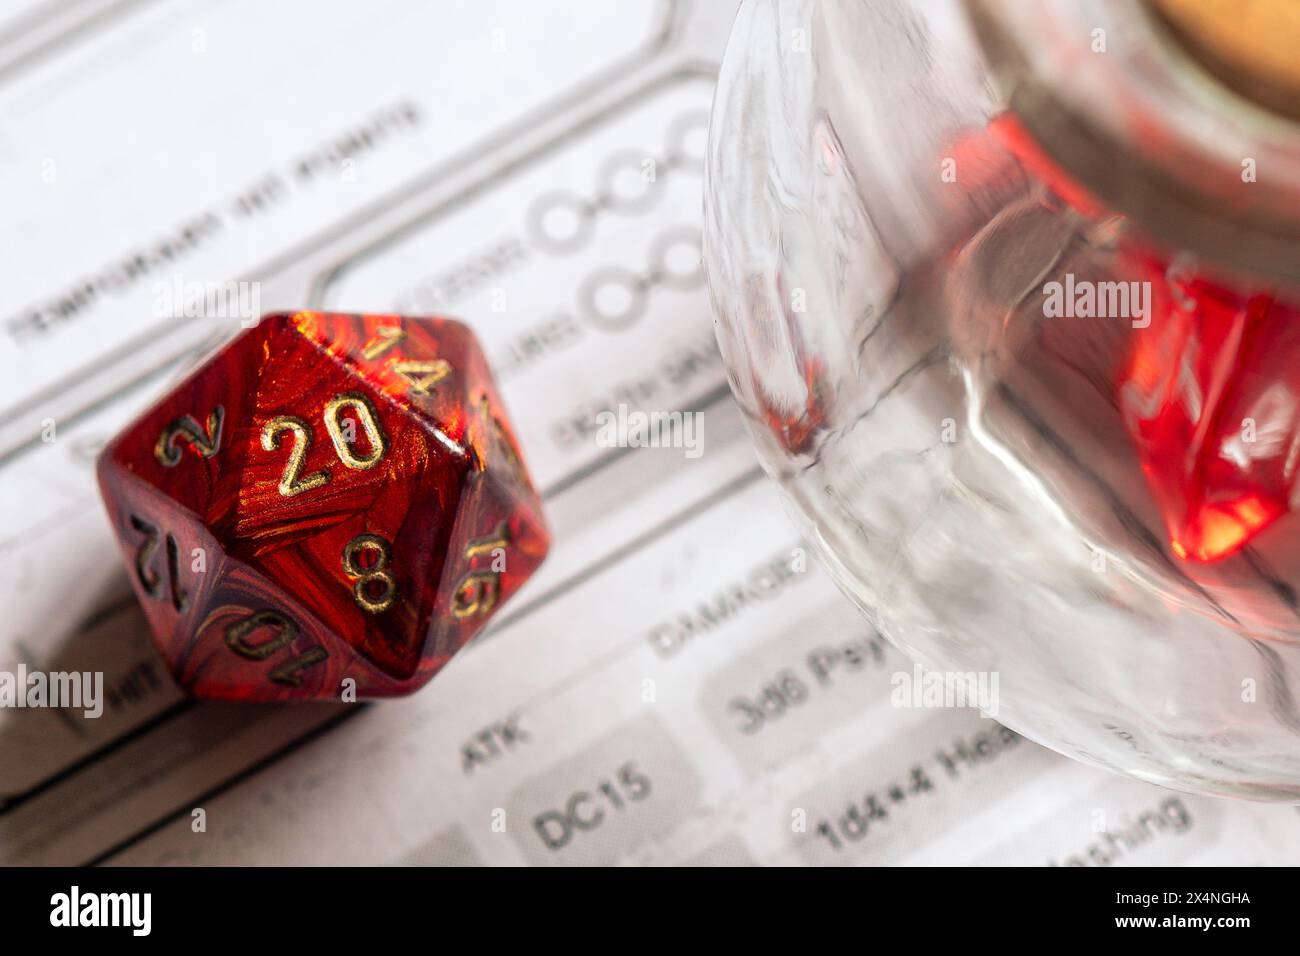 Dés Red D20 aux côtés d'un pot en verre sur une feuille de personnage, mettant l'accent sur la stratégie et la prise de décision dans les jeux de rôle. Banque D'Images